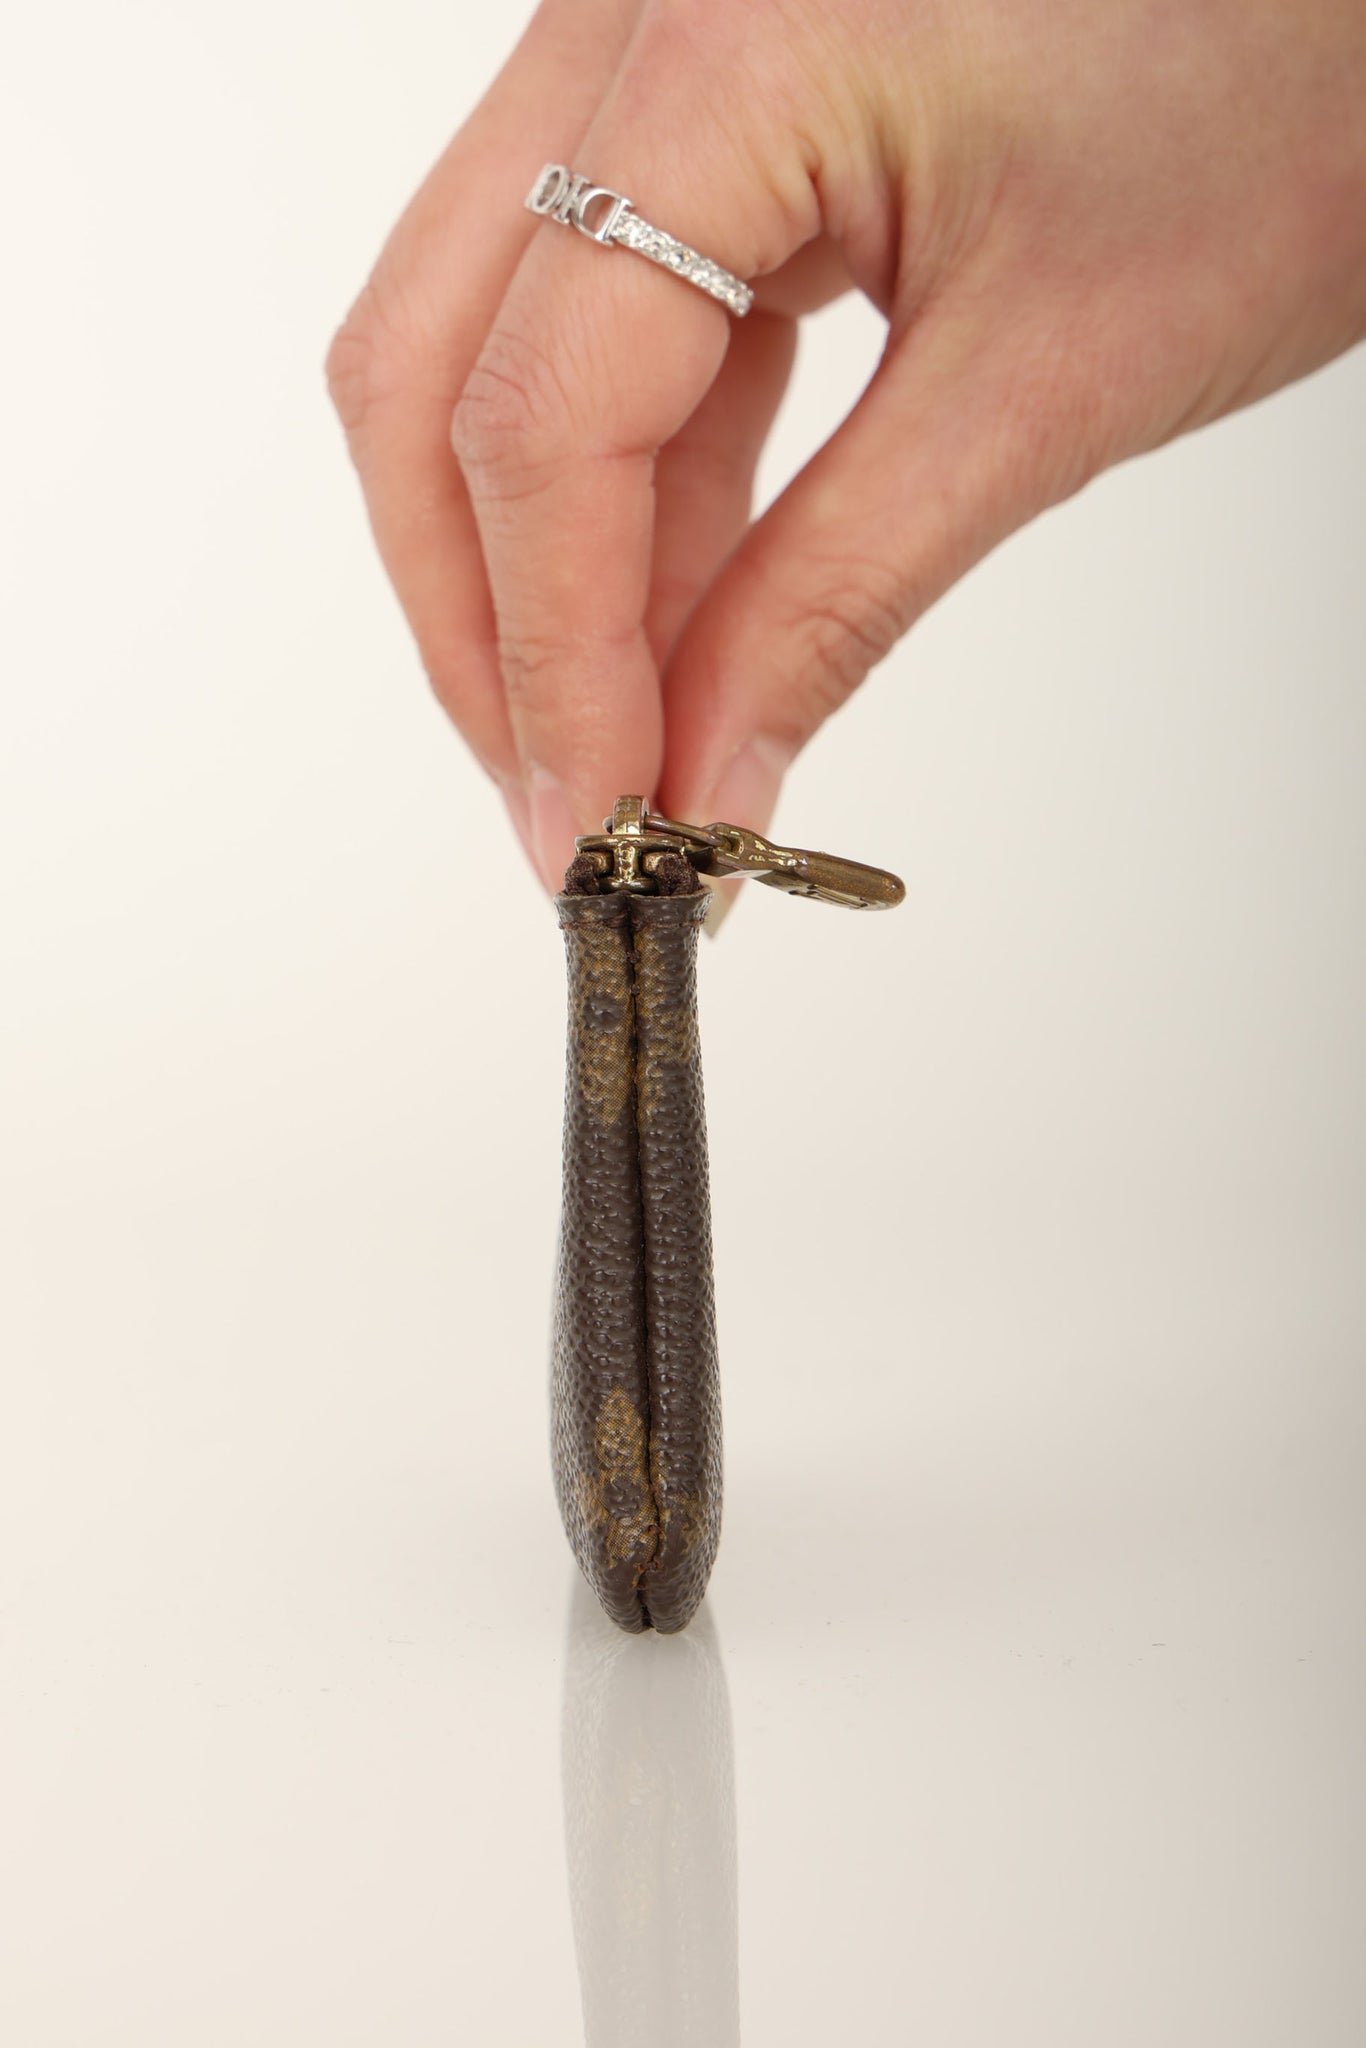 Louis Vuitton Monogram Mini Key Pouch